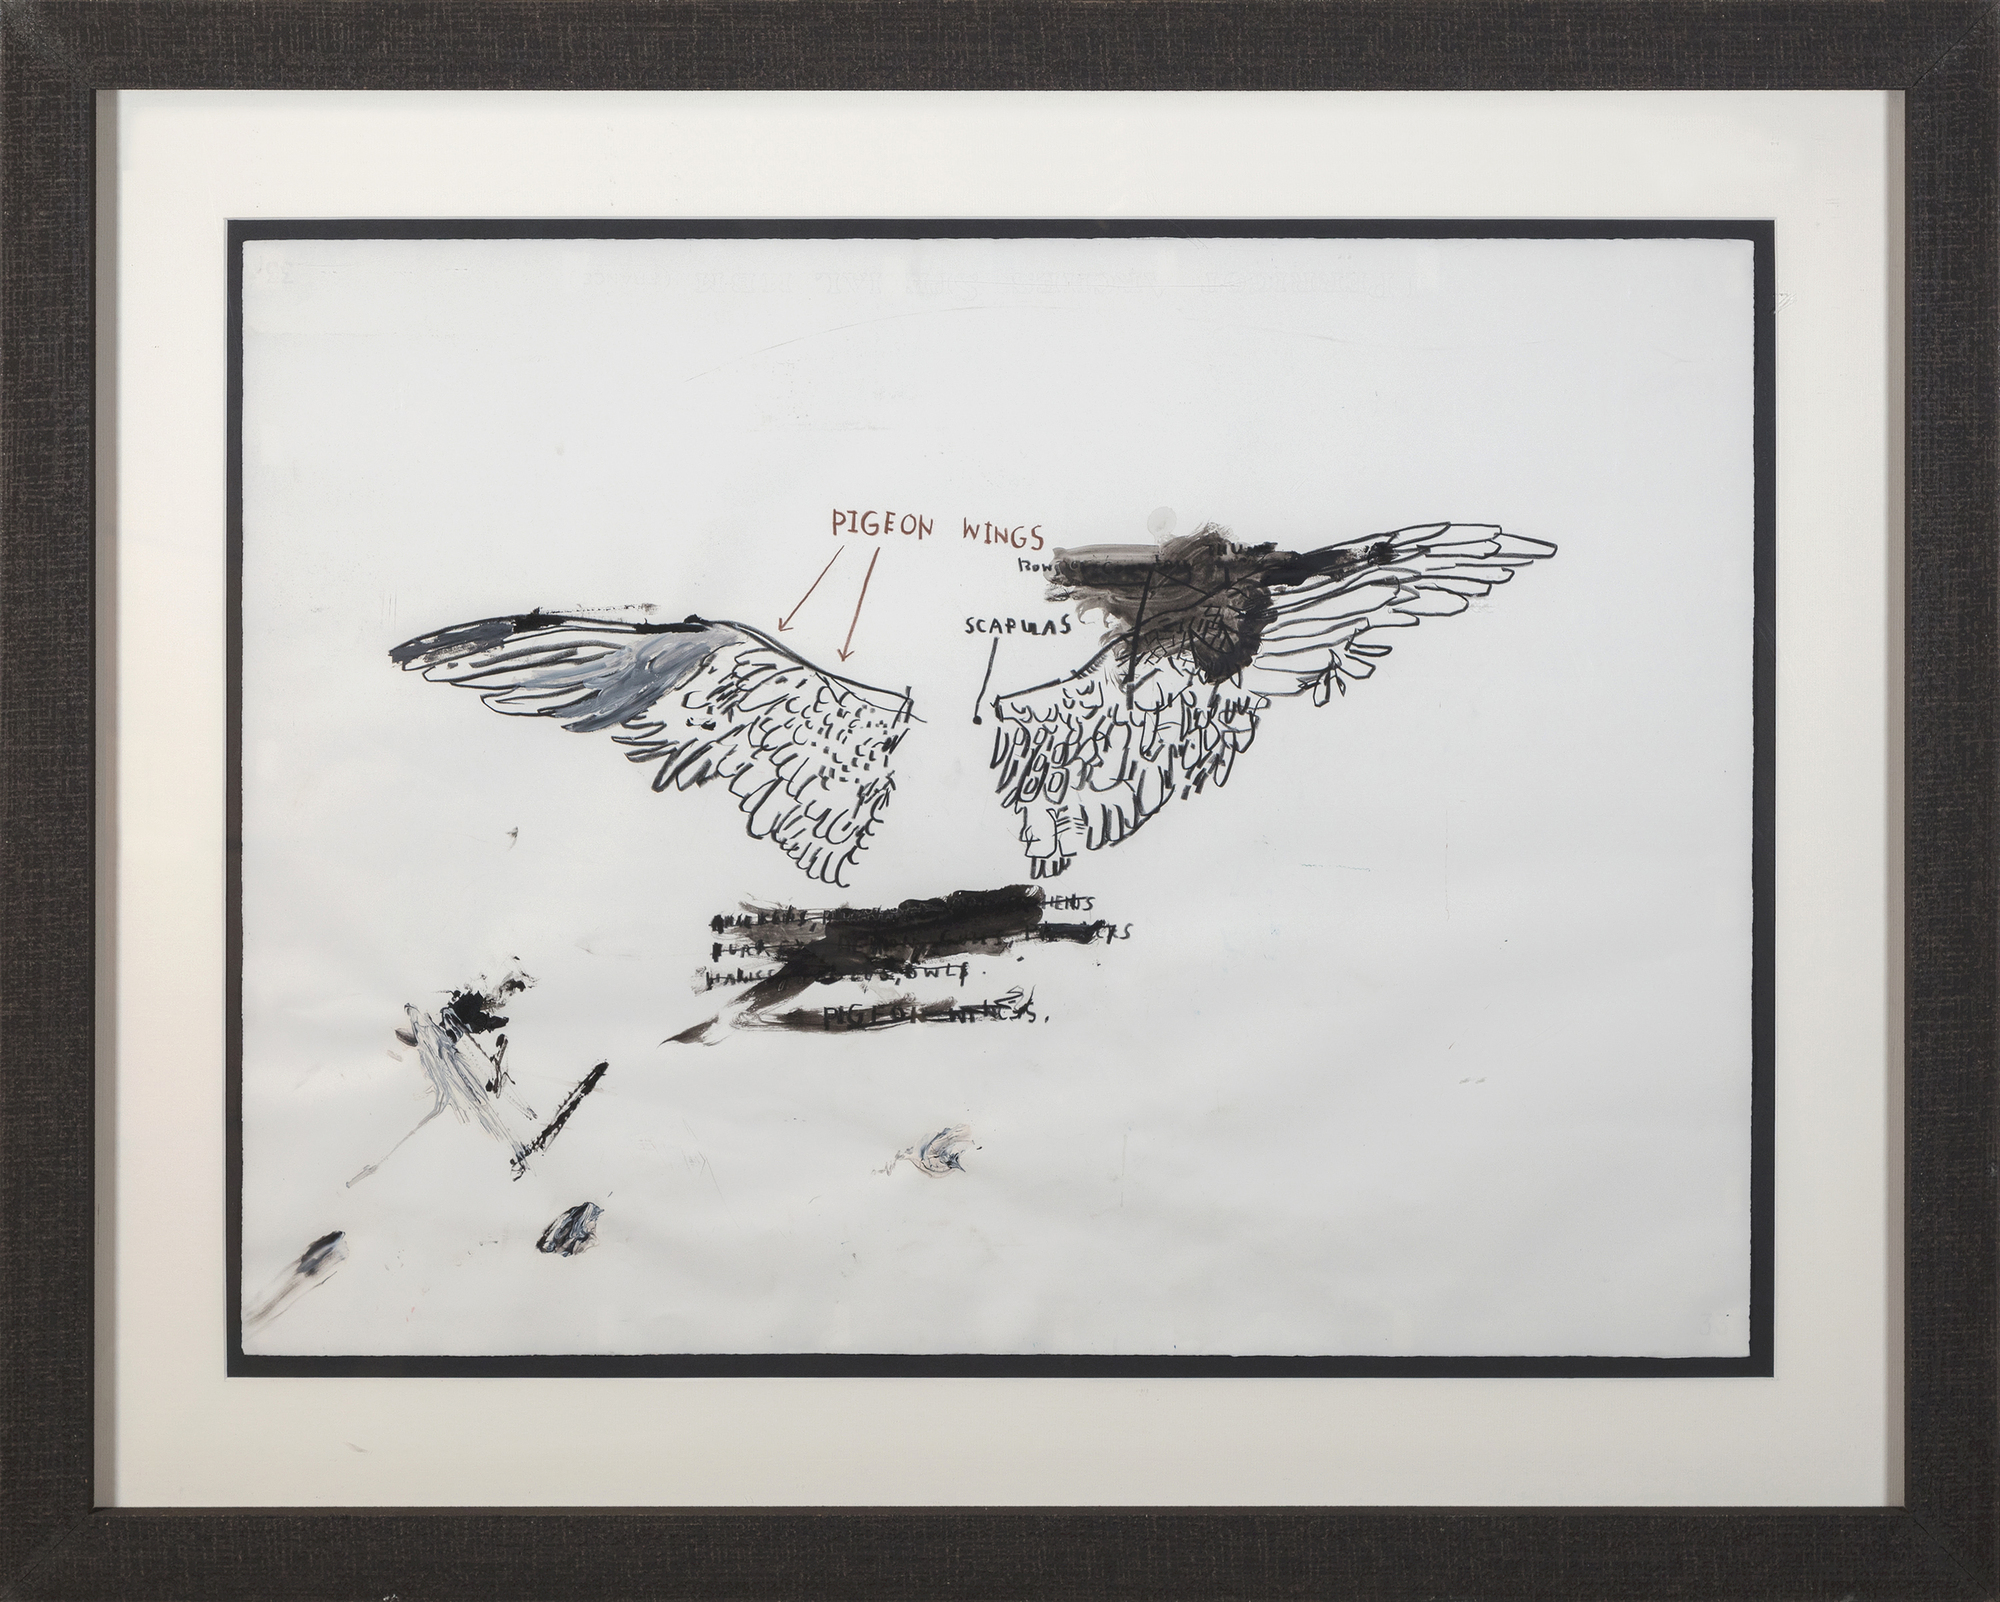 JEAN-MICHEL BASQUIAT - Sans titre (Anatomie de pigeon) - huile, mine de plomb et craie sur papier - 22 x 30 in.